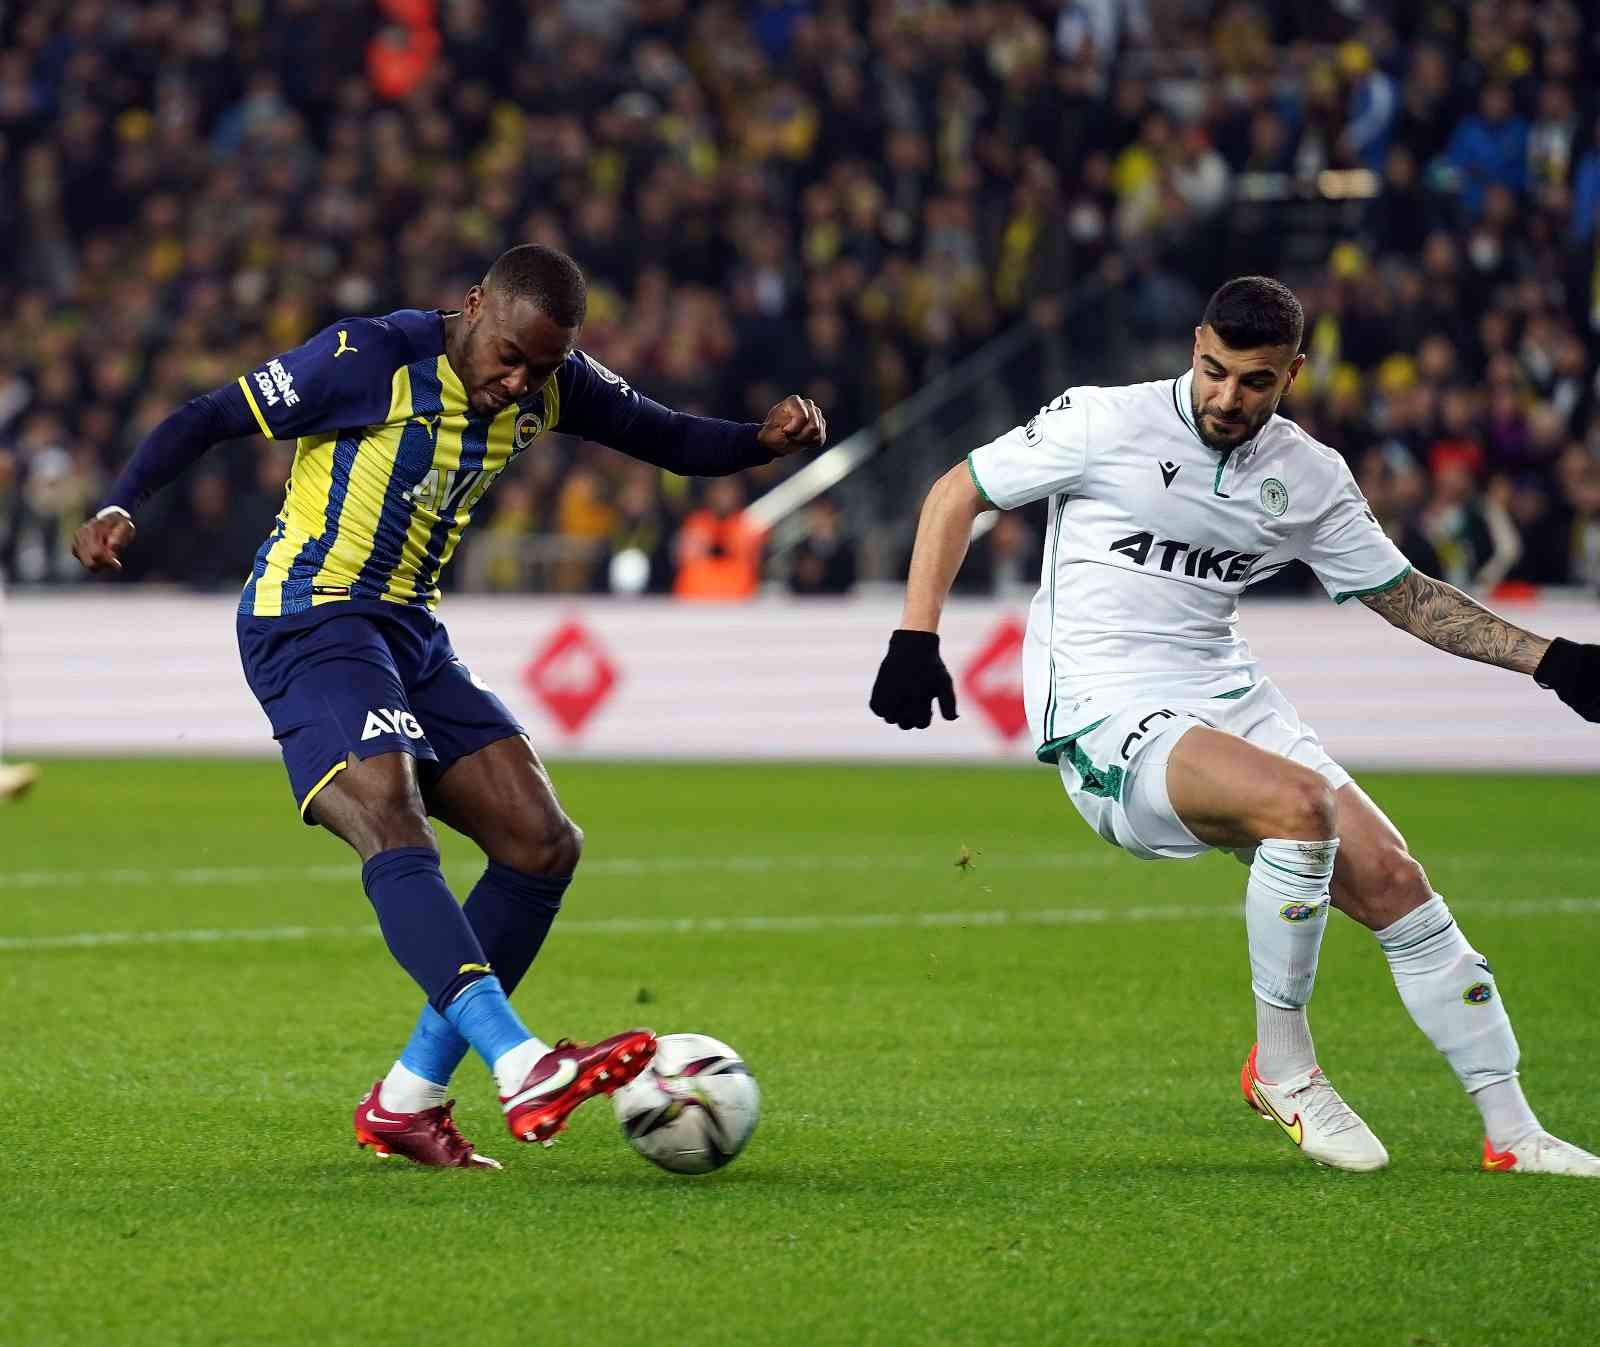 Spor Toto Süper Lig’in 30. haftasında Fenerbahçe sahasında Konyaspor ile karşılaşıyor. Mücadelenin ilk yarısı konuk ekibin 1-0’lık üstünlüğü ile ...